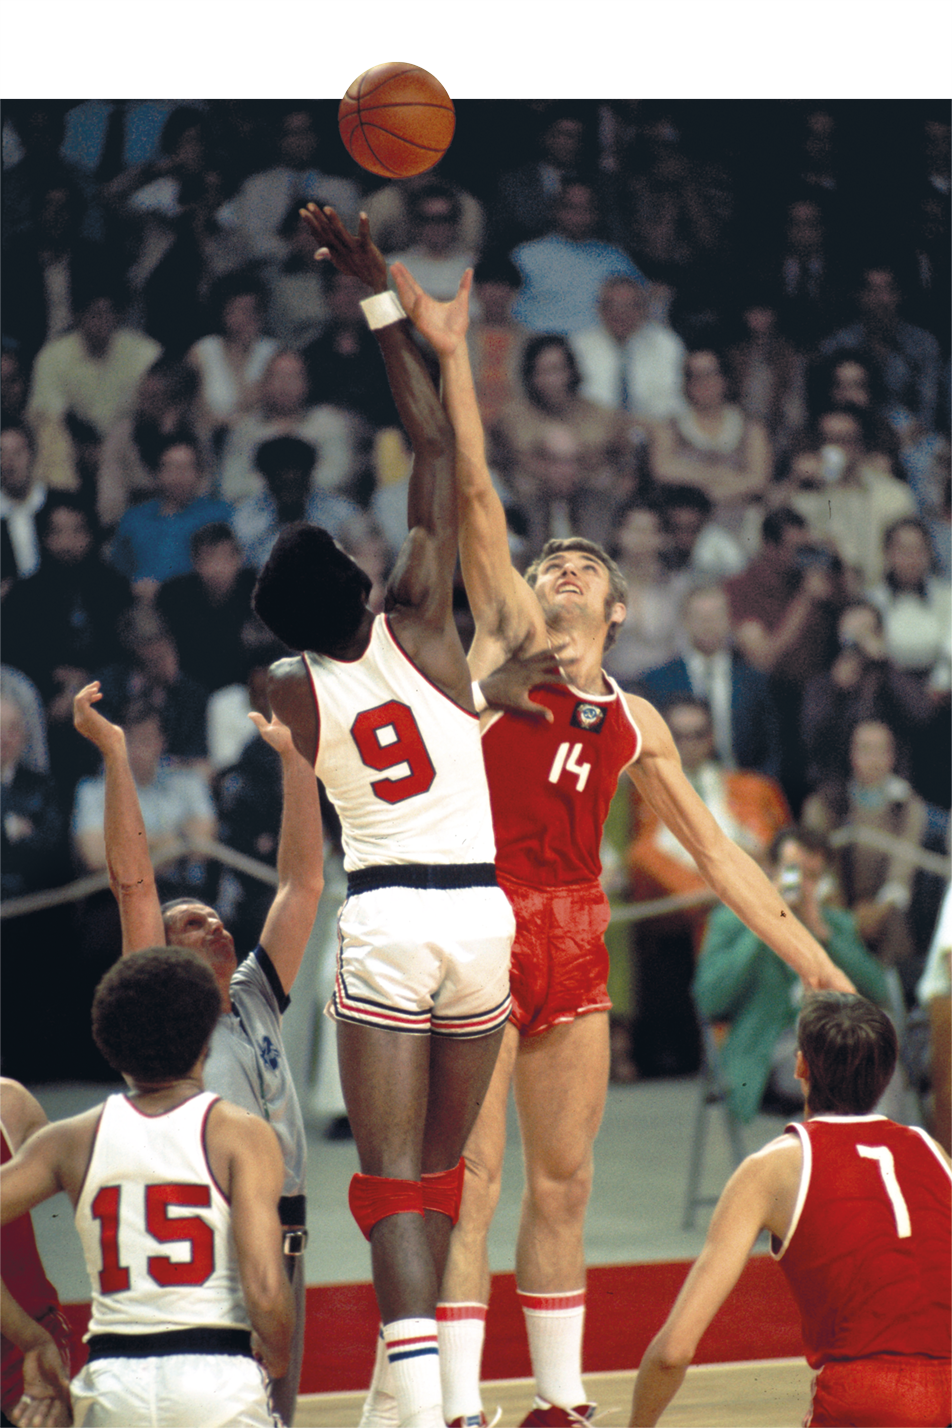 Fotografia. Dois homens, um usando uniforme de basquete branco e o outro com uniforme vermelho, estão com um dos braços estendidos na direção de uma bola. Ao fundo, pessoas assistindo.